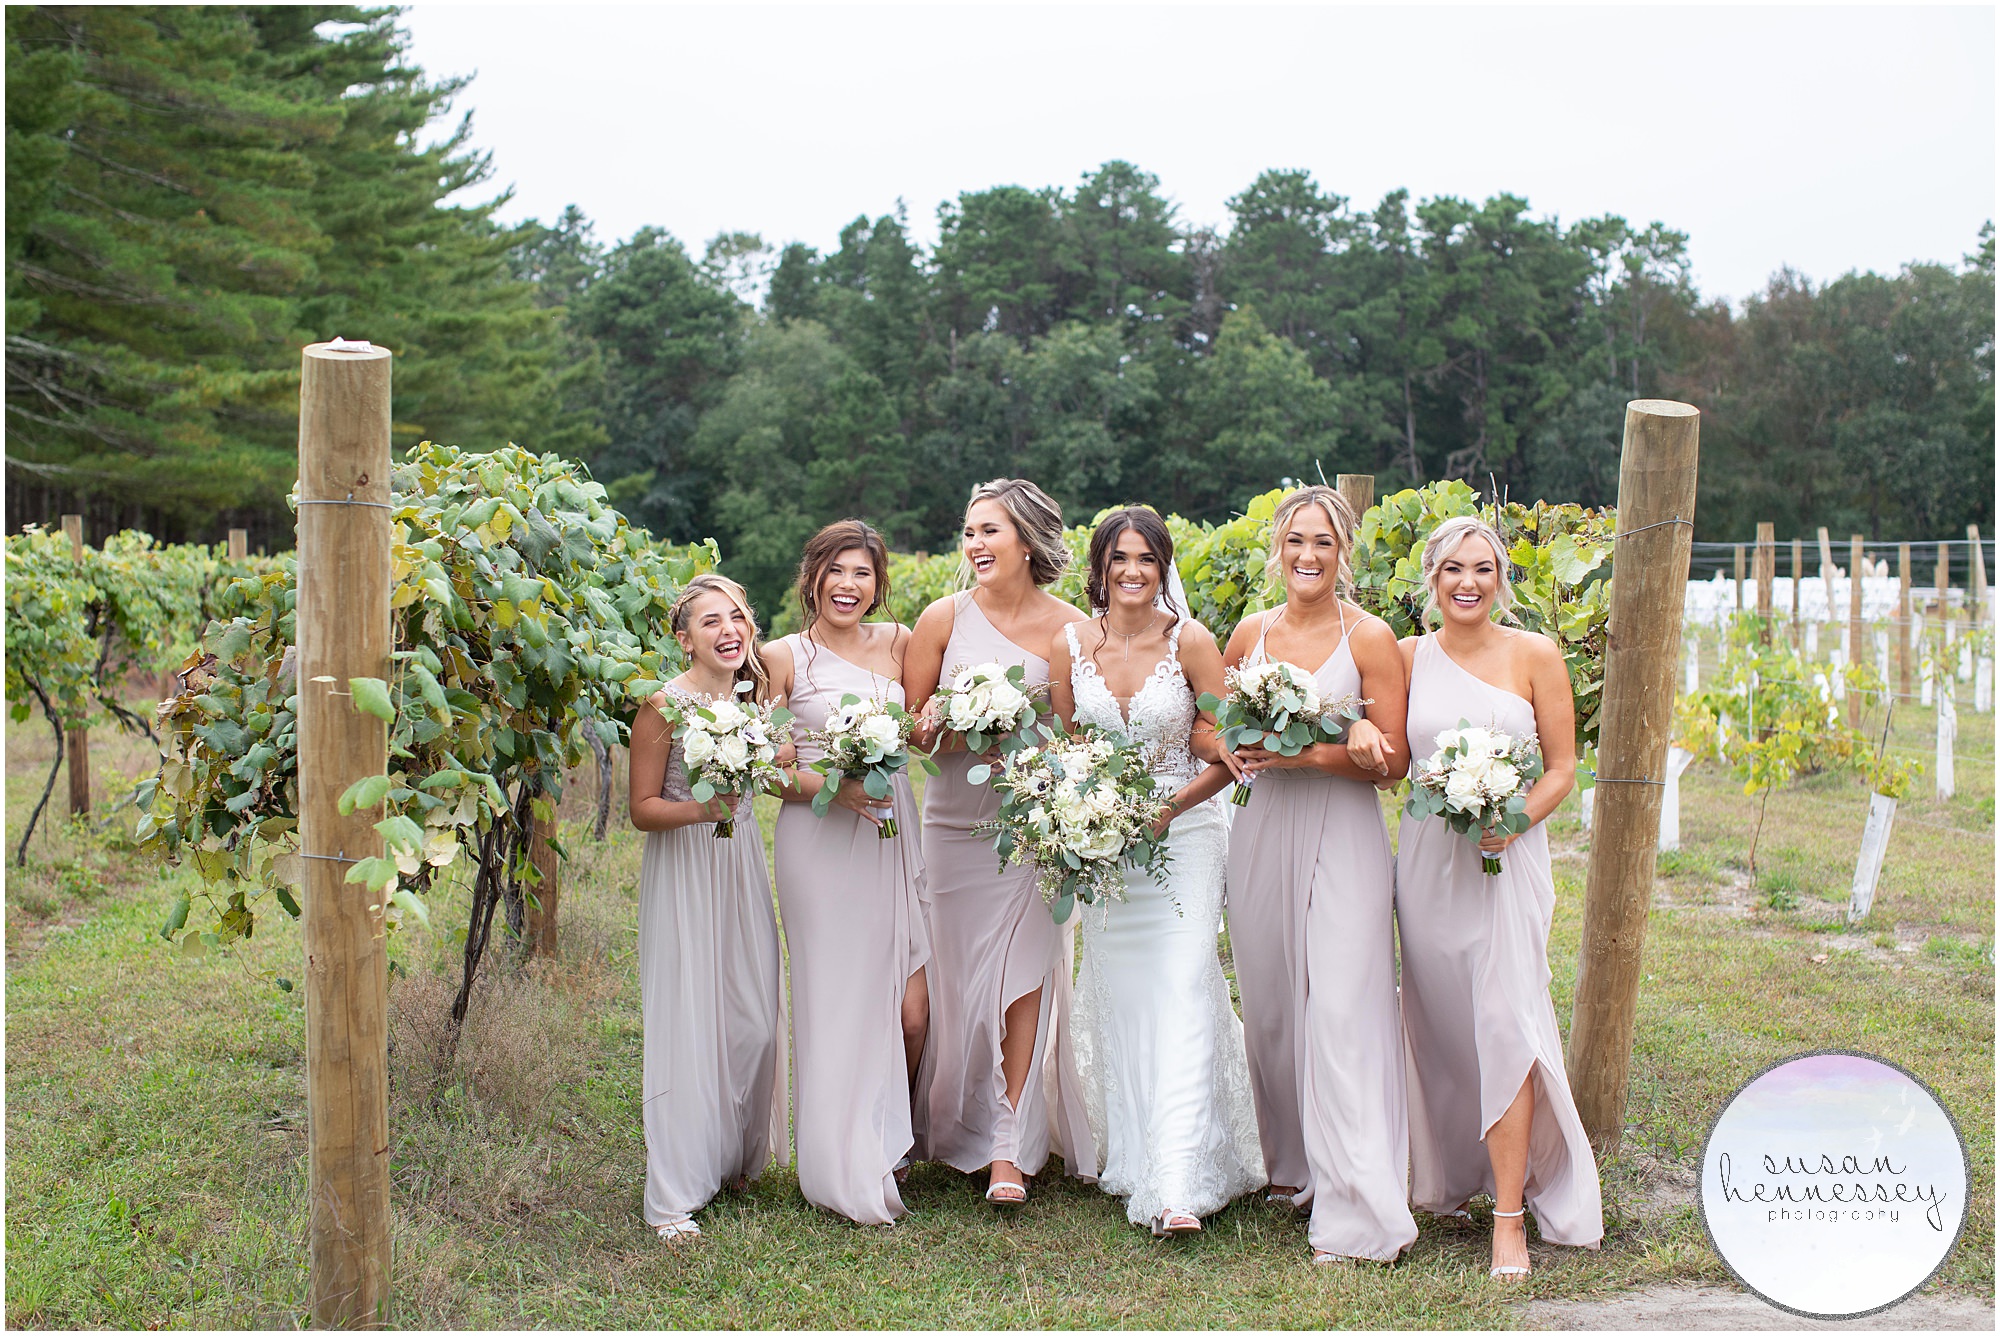 Bride and bridesmaids at South Jersey vineyard wedding